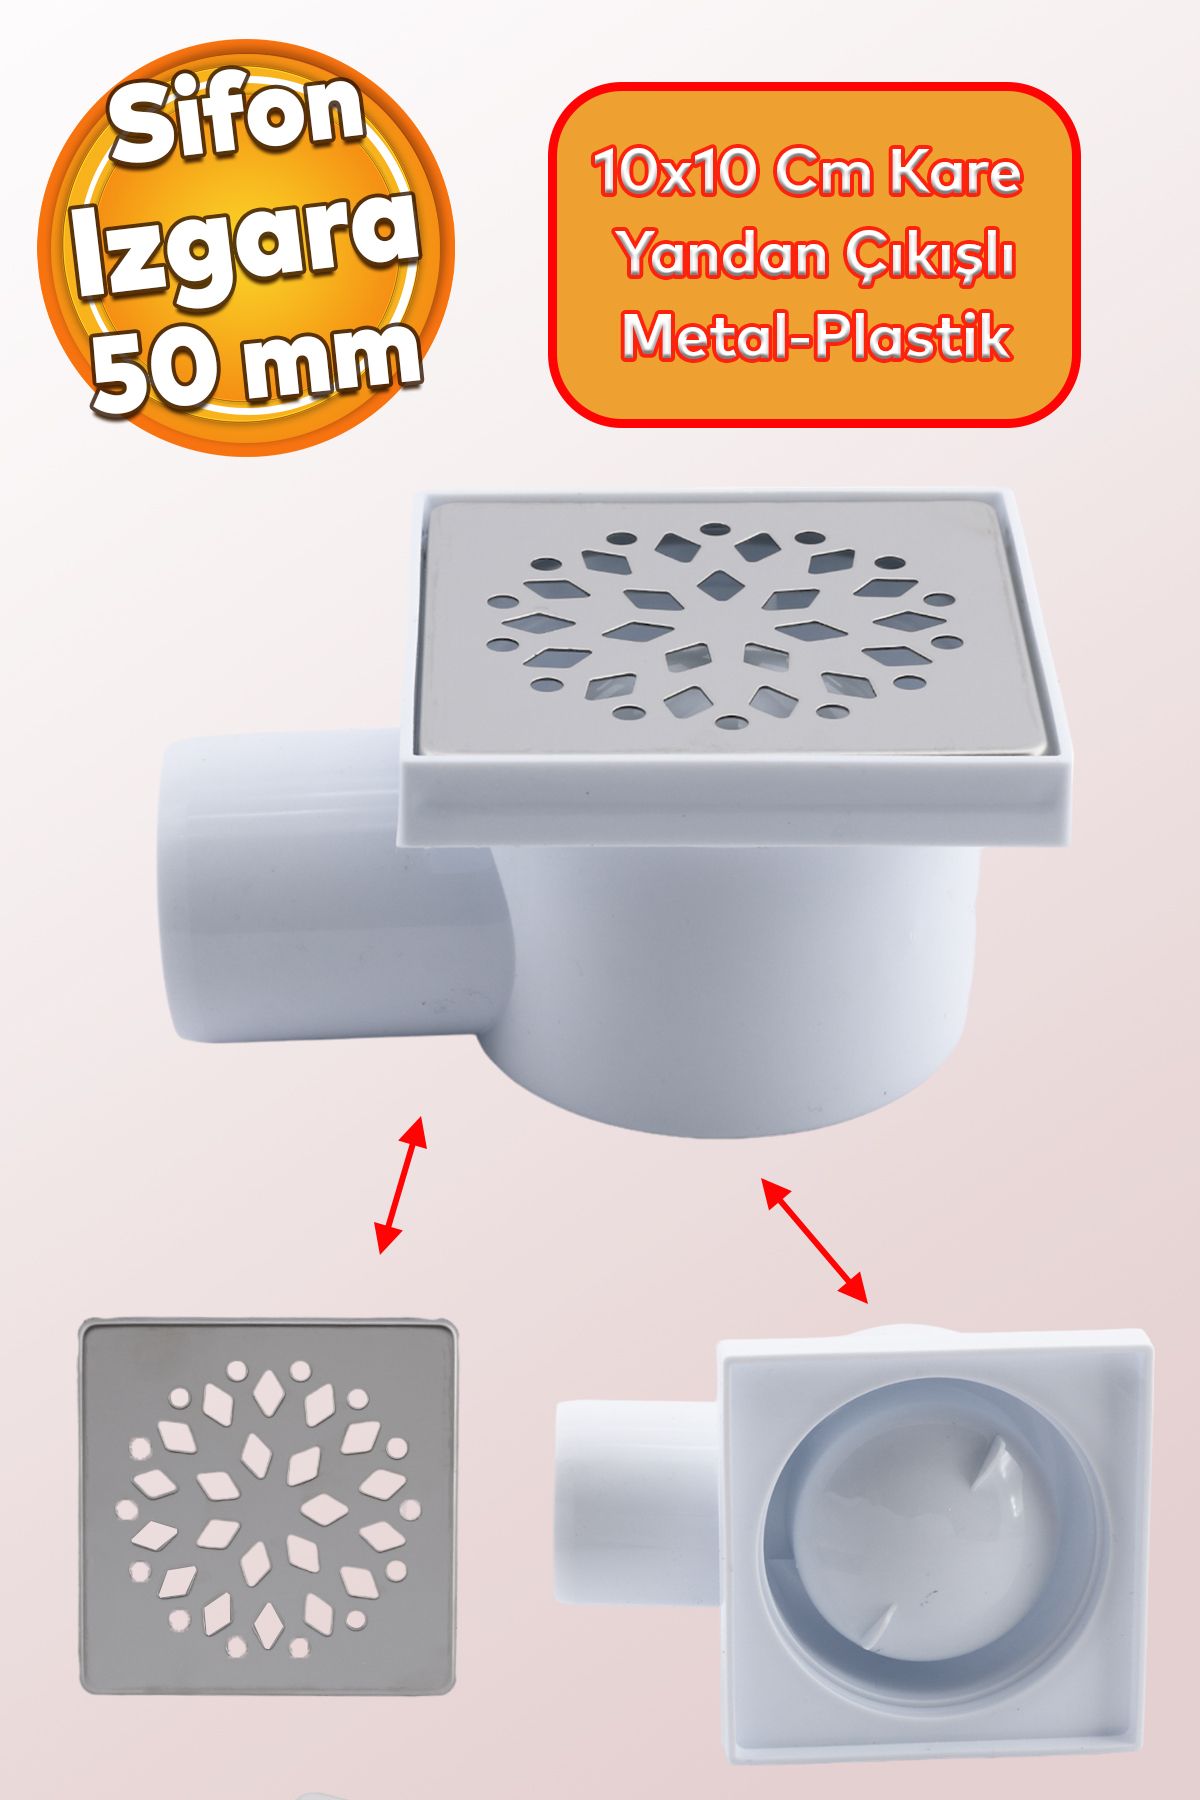 Badem10 Metal Plastik Yer Süzgeci Banyo Izgara Lavabo Pis Su Gideri Kapak Yandan Çıkışlı Yer Sifon 50 mm